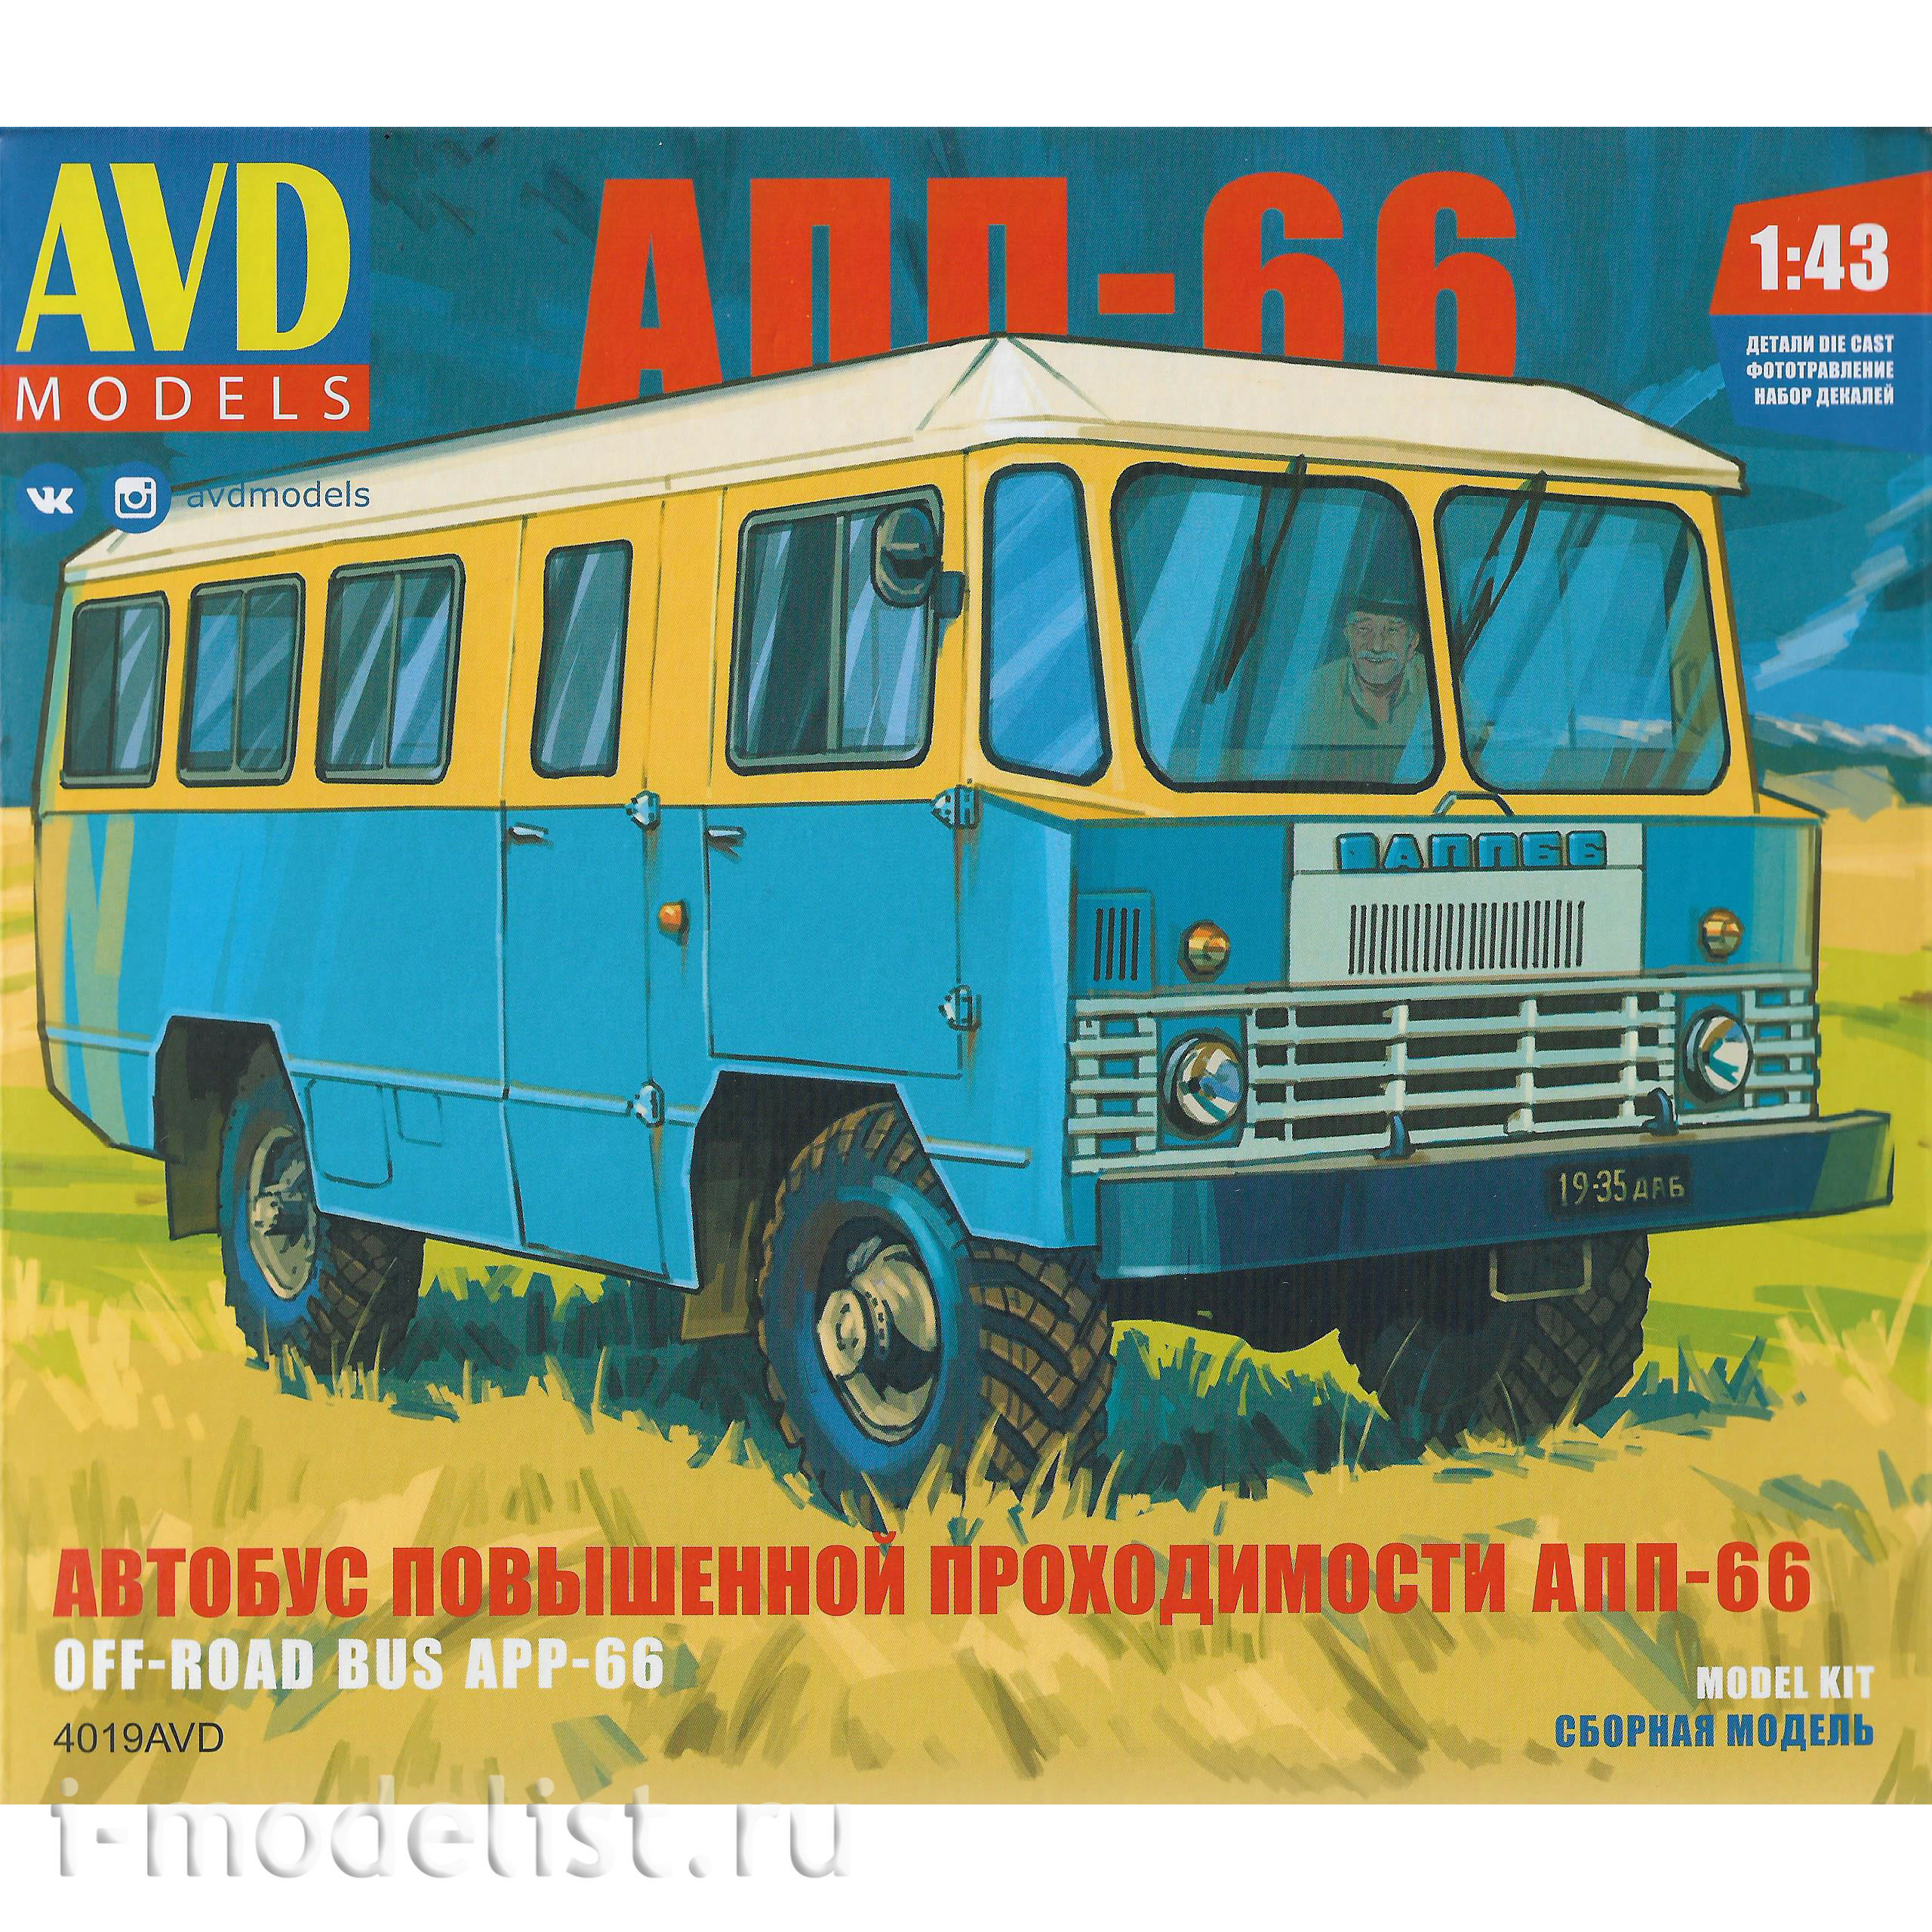 4019AVD AVD Models 1/43 all-terrain bus APP-66